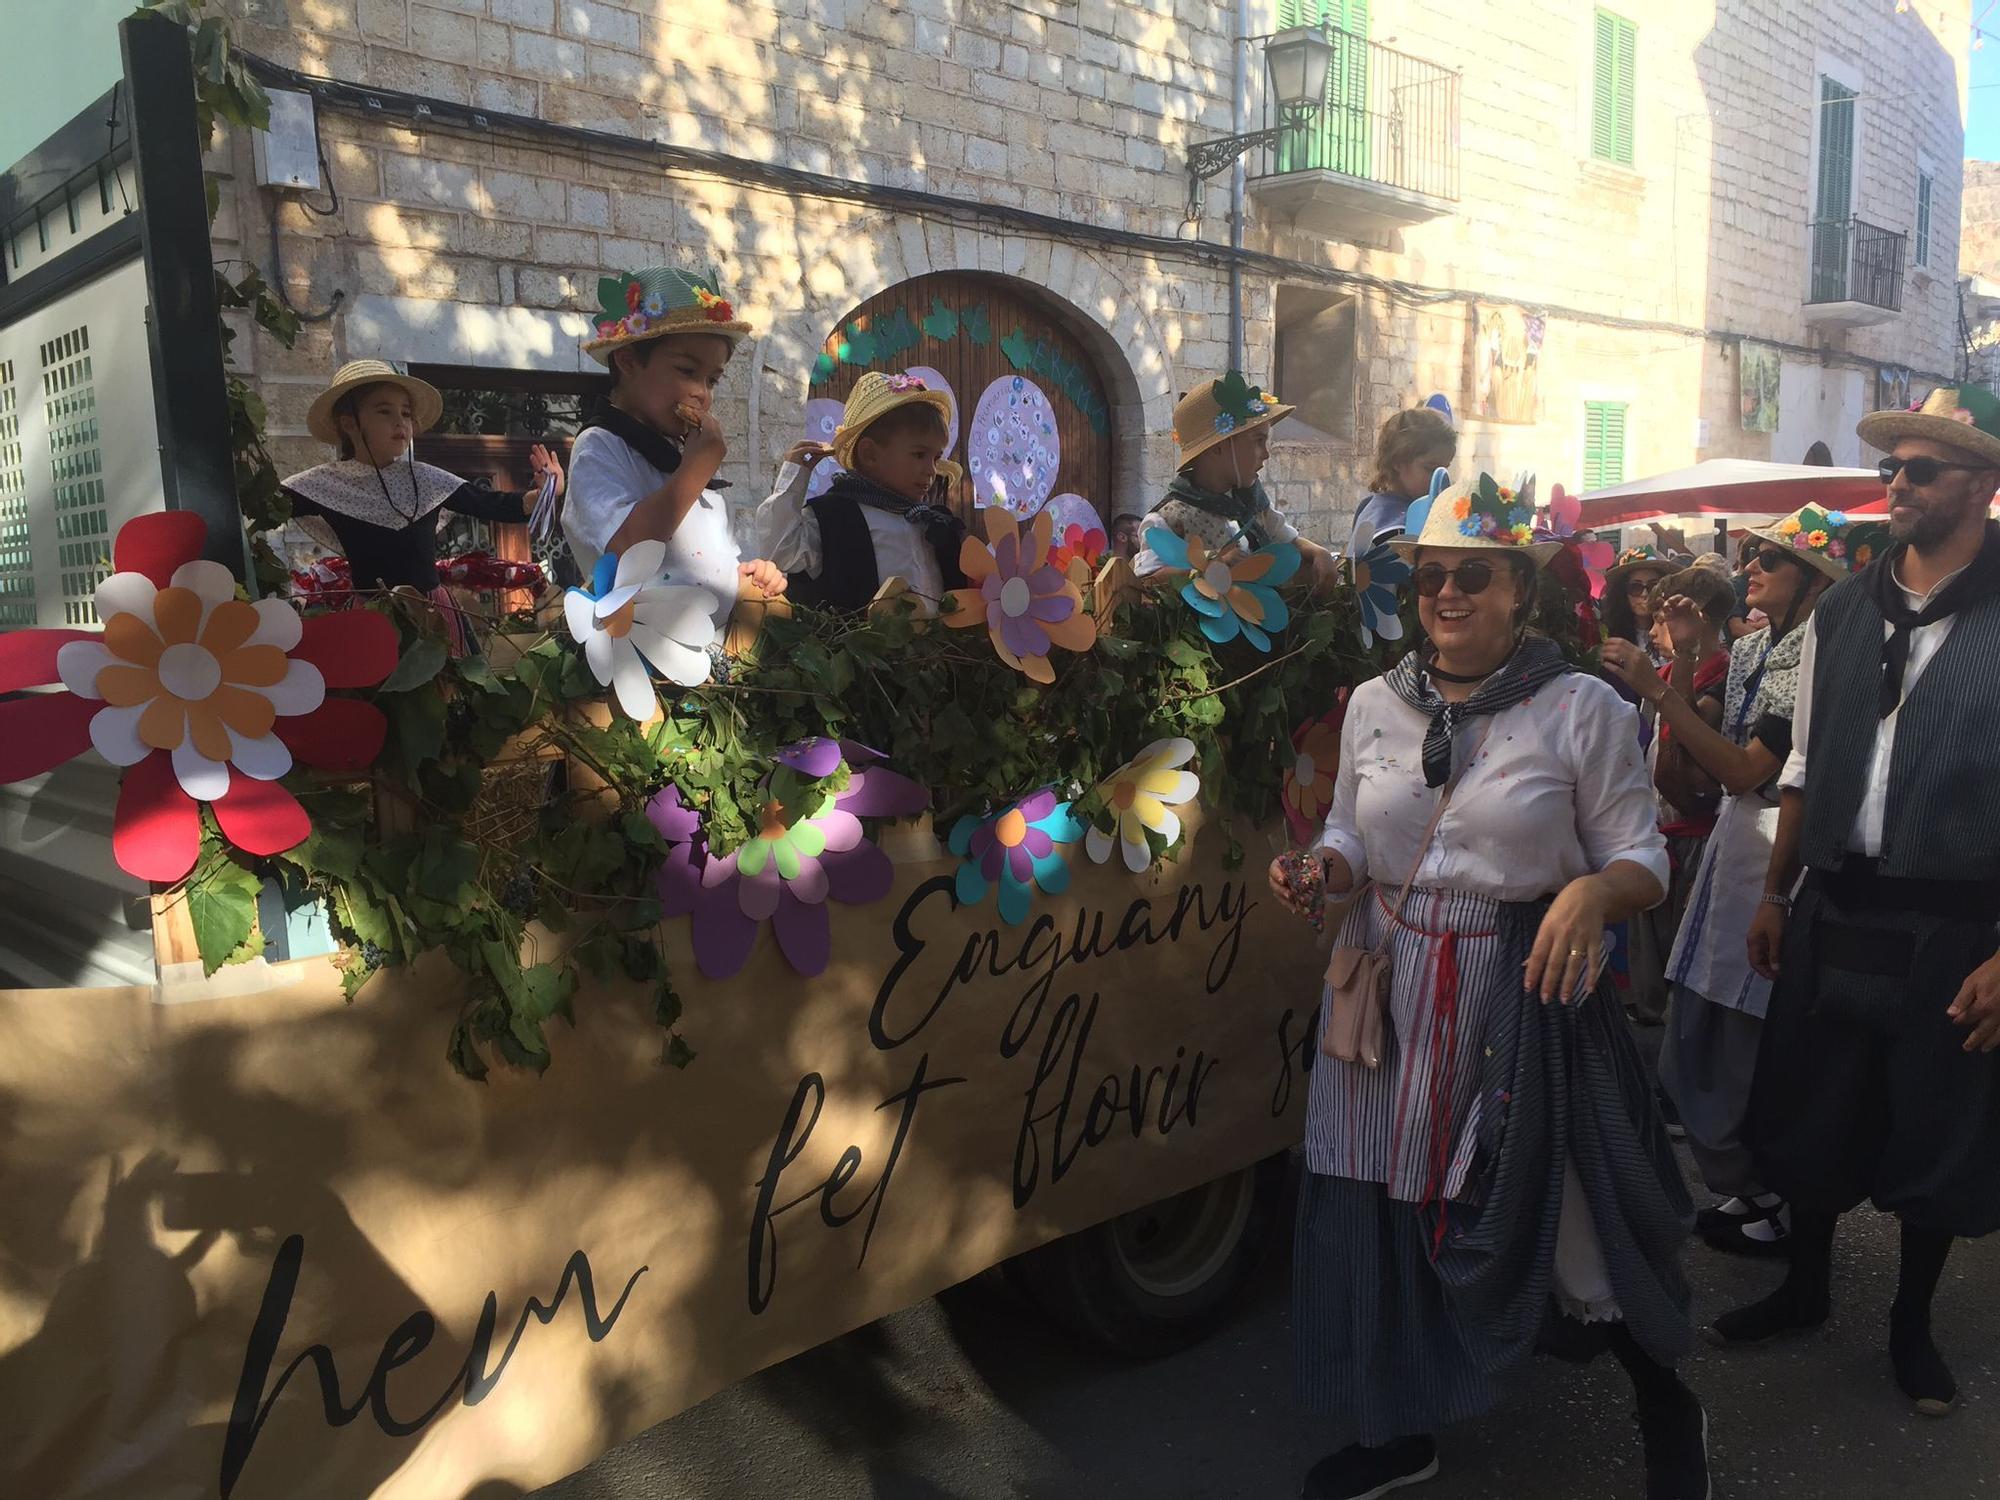 FOTOS | Binissalem asiste al desfile de más de setenta carrozas vinícolas